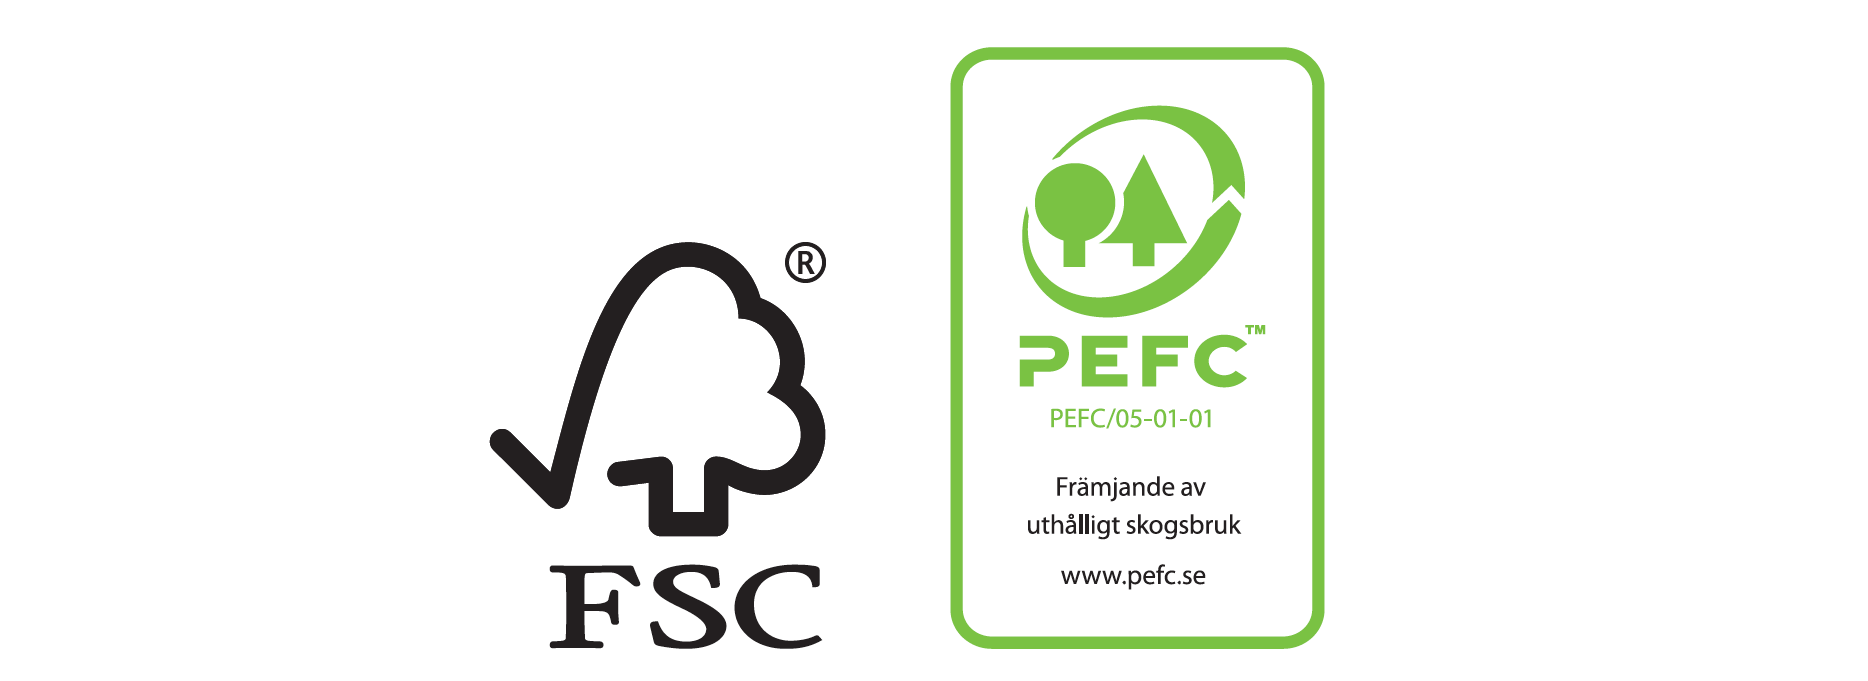 Symboler för FSC och PEFC.